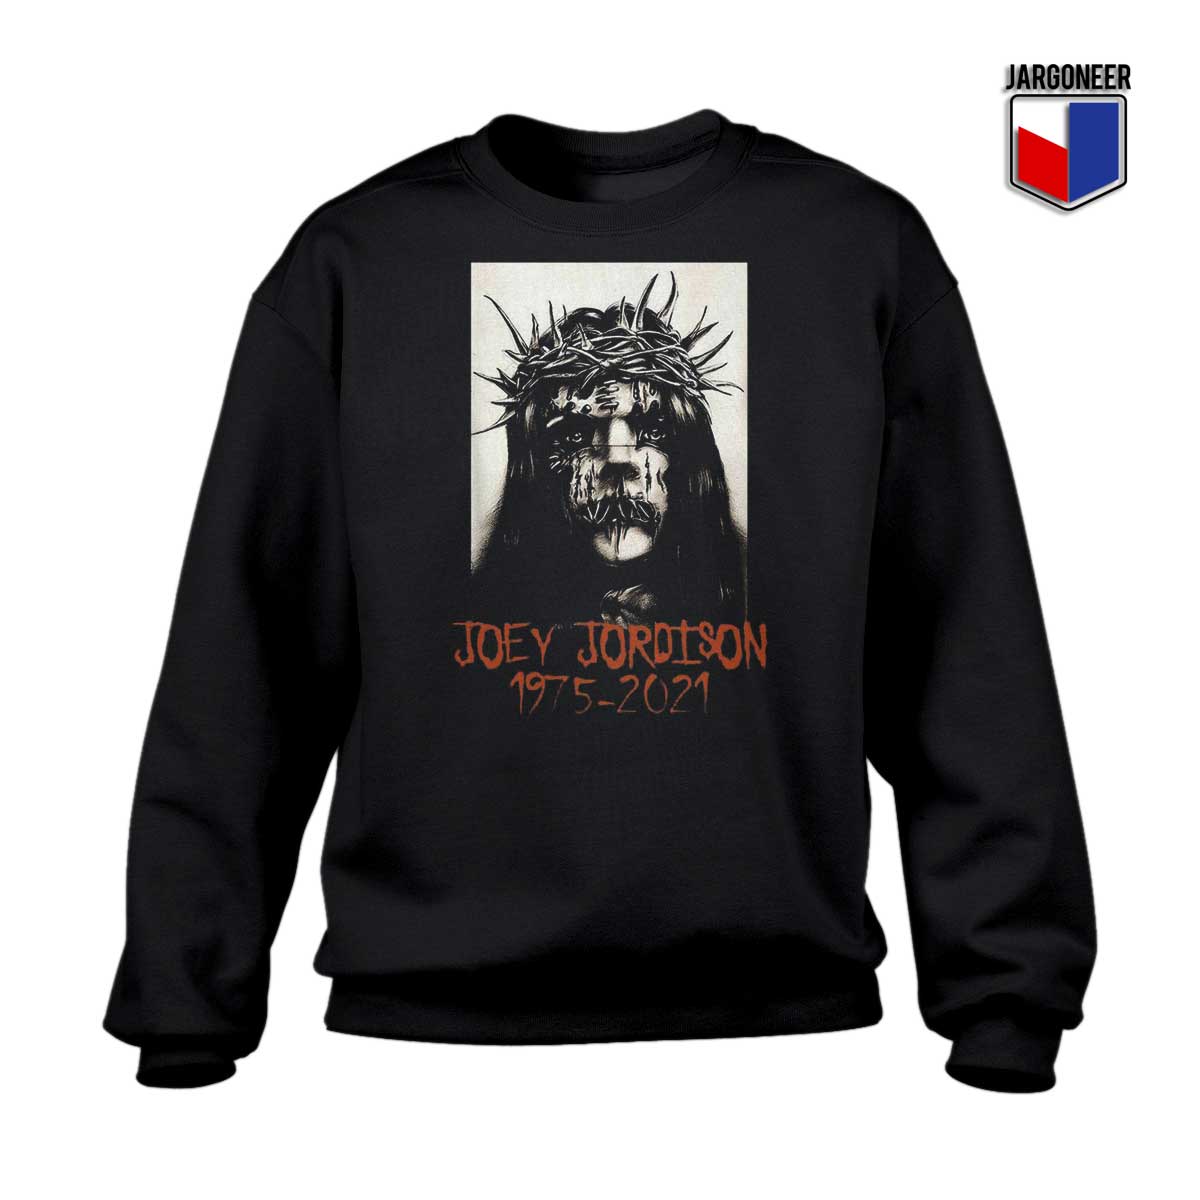 Joey Jordison Slipknot 1975 2021 Sweatshirt - Shop Unique Graphic Cool Shirt Designs